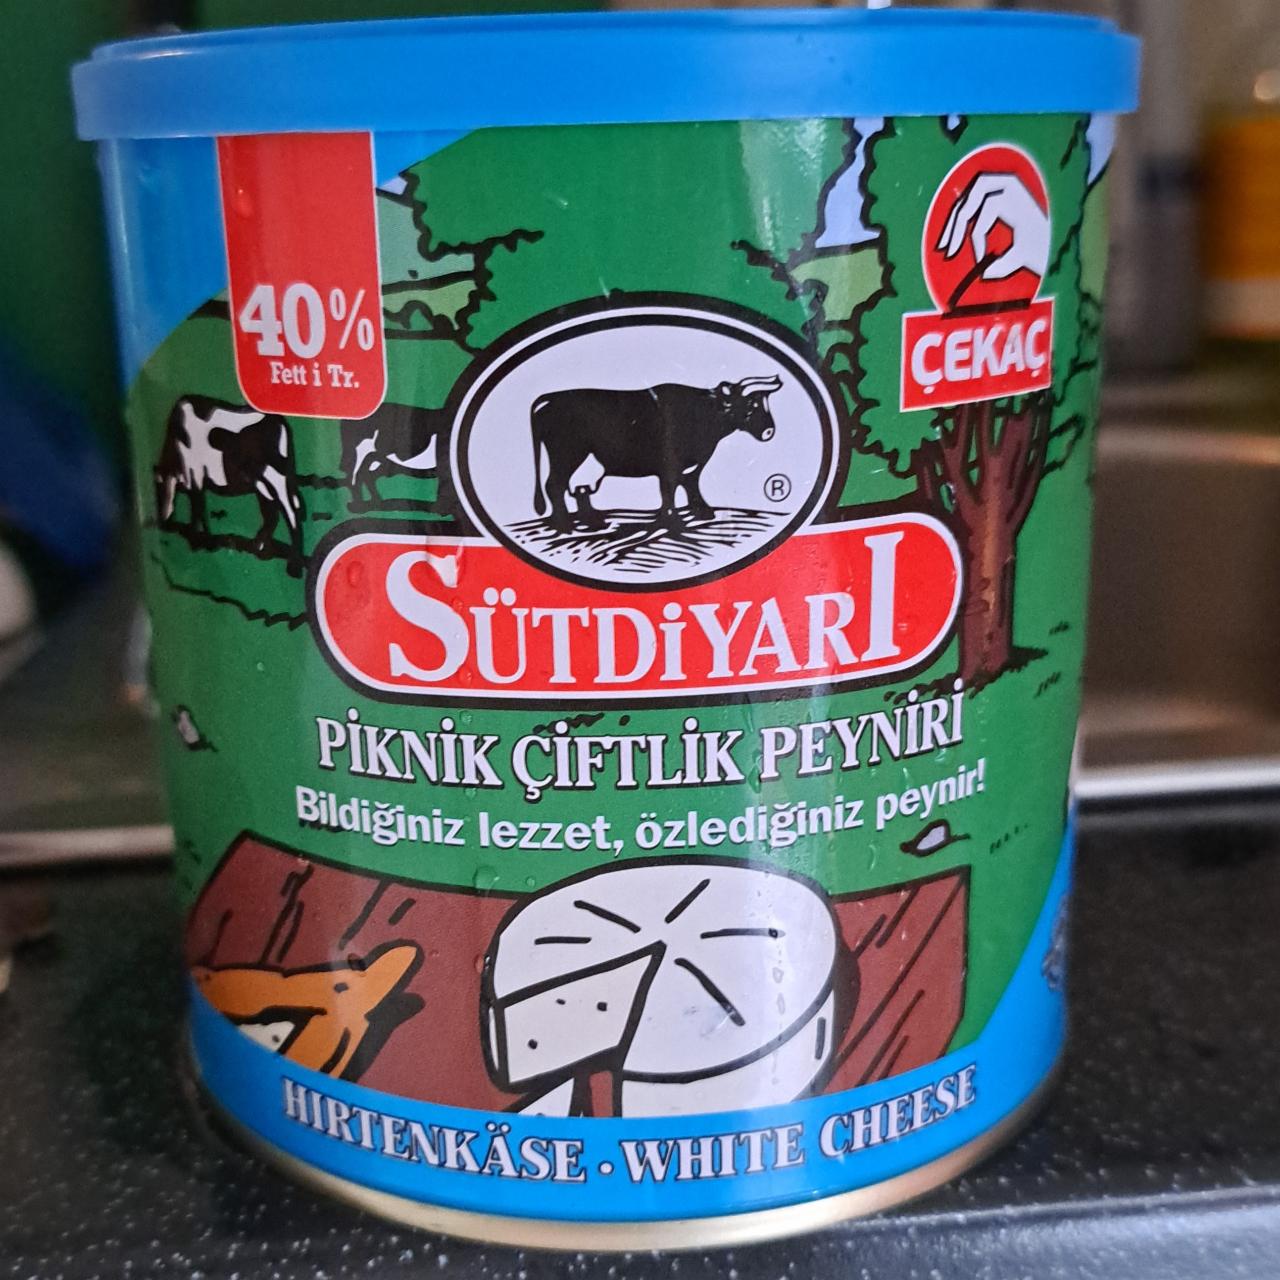 Fotografie - Piknik Çiftlik Peyniri 40% Fett Sütdiyarı